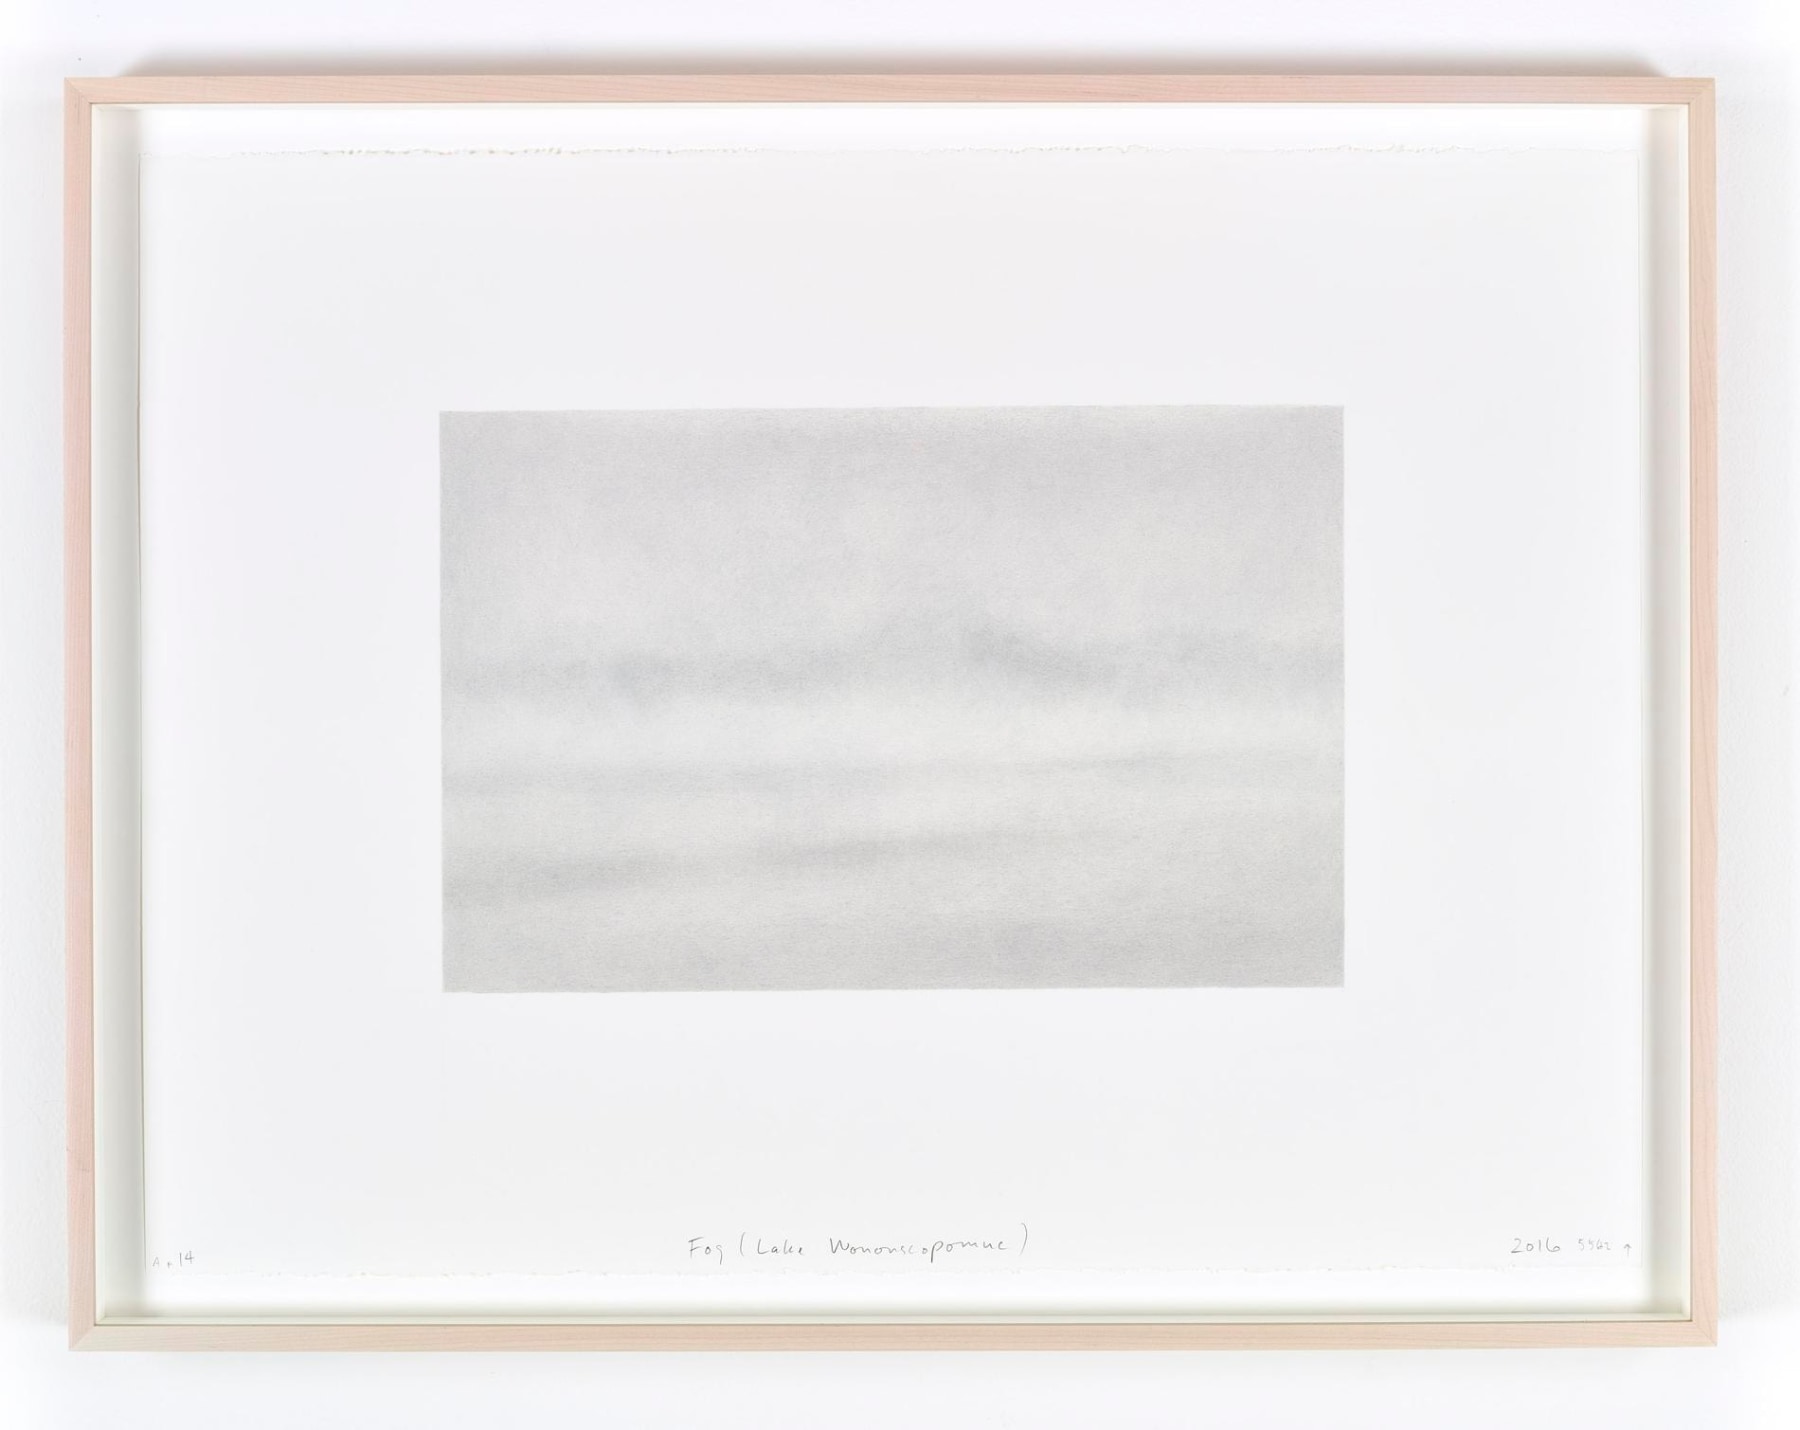 Image of SPENCER FINCH's Fog (Lake Wononscopomuc), 2016